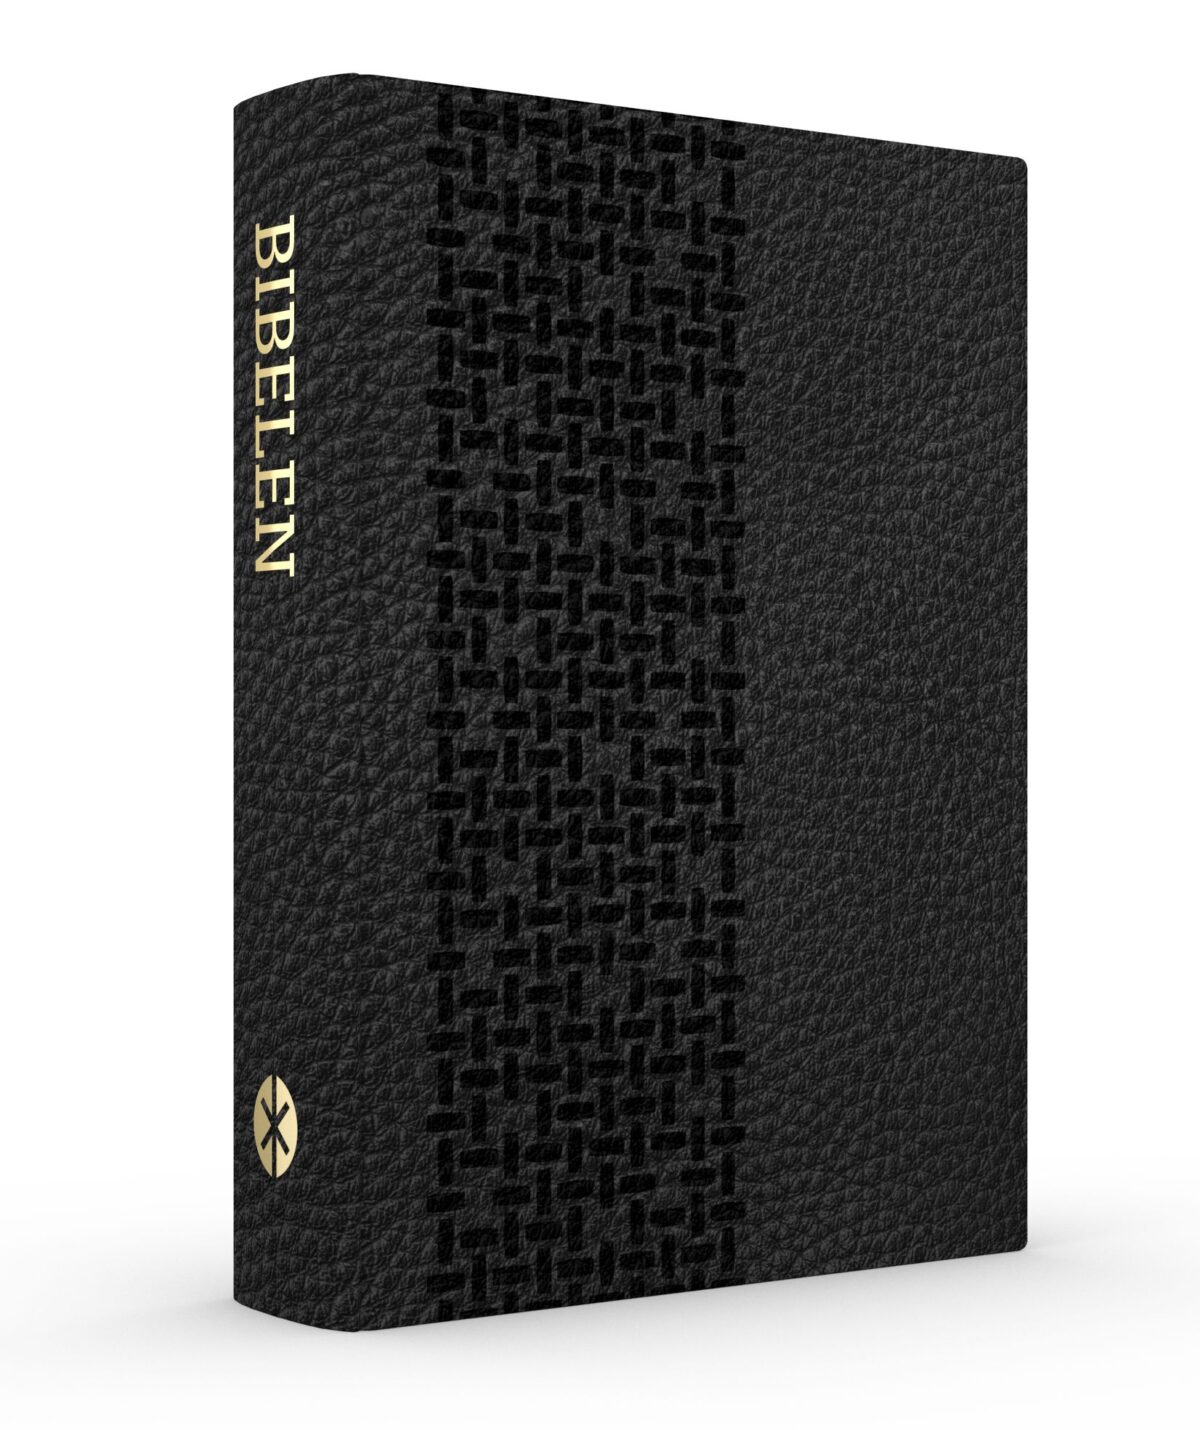 OnlyByGrace Bibelen på hverdagsdansk sort læder stor